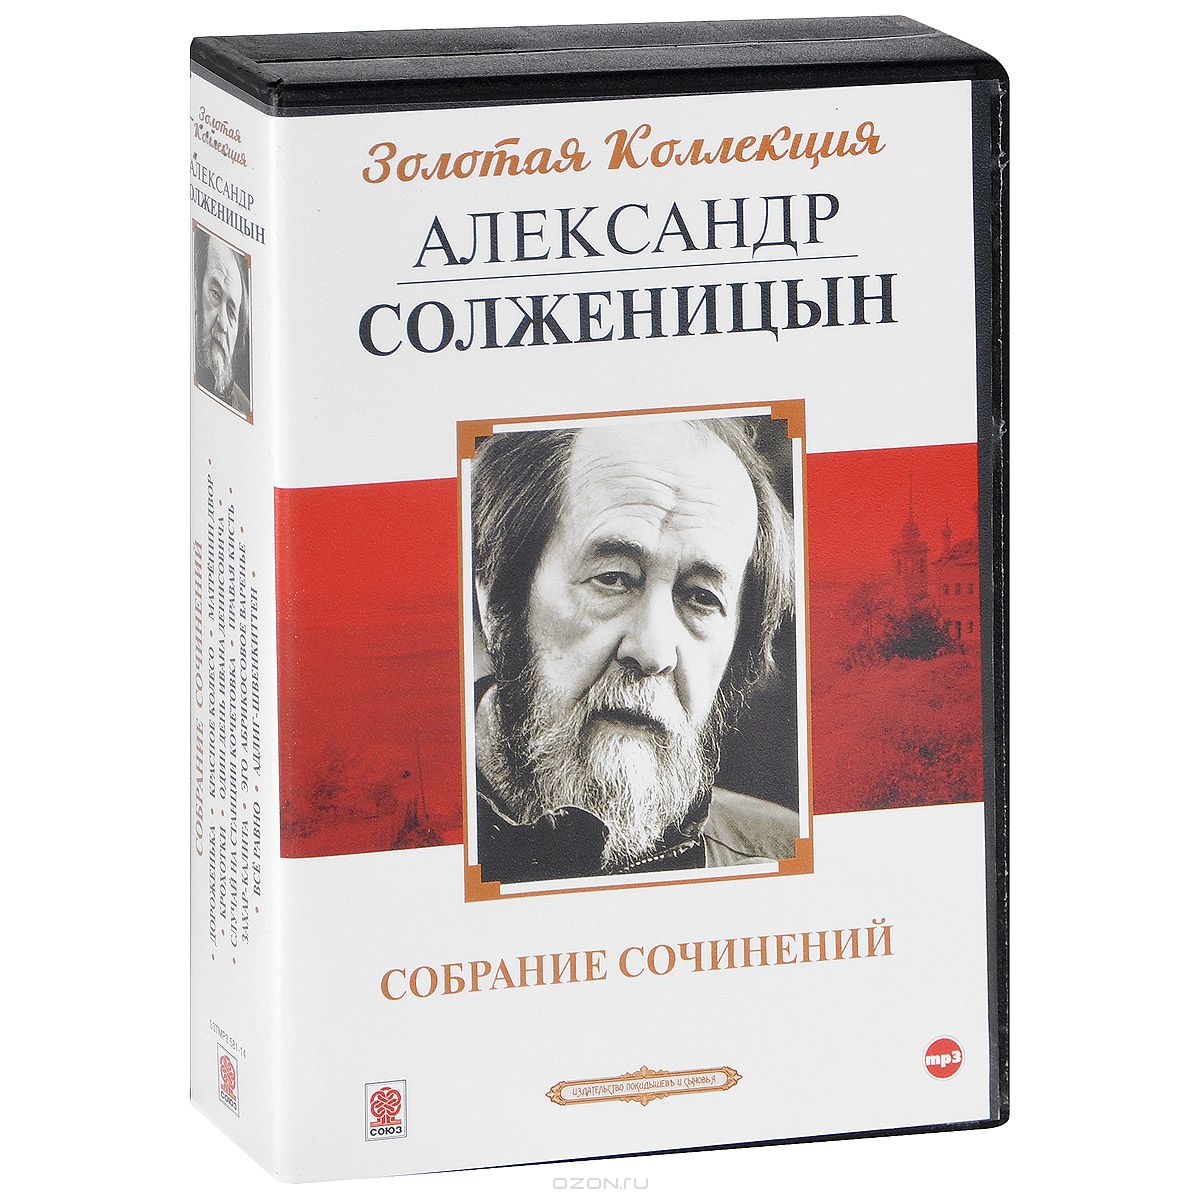 Самые известные произведения солженицына. Книги Солженицына. Обложки книг Солженицына.